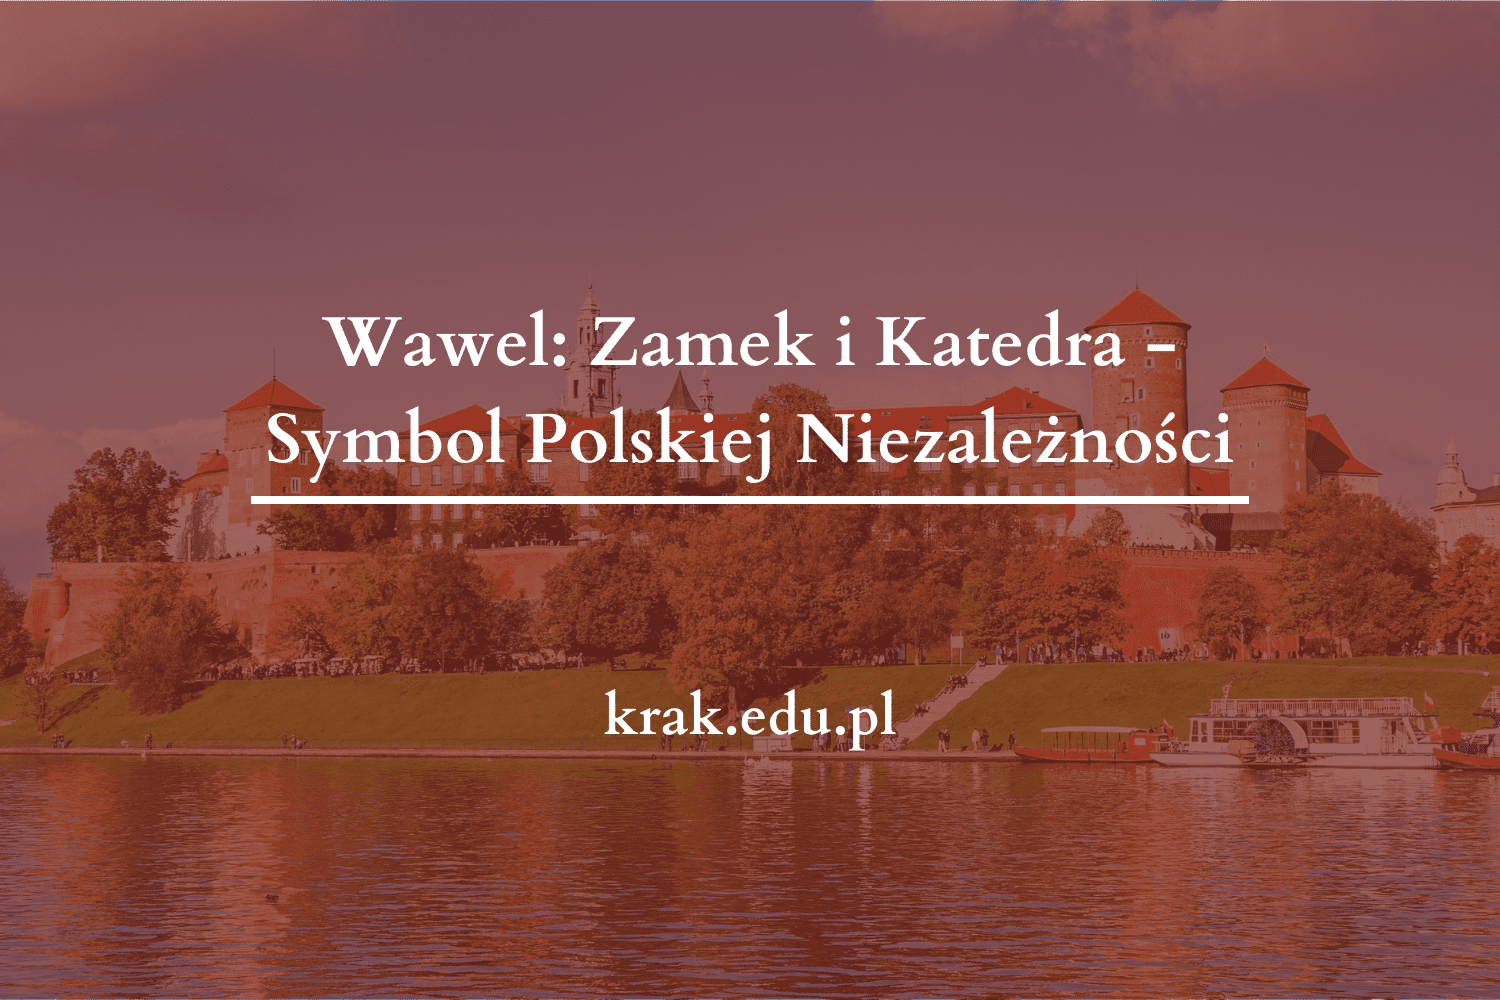 Wawel: Zamek i Katedra – Symbol Polskiej Niezależności